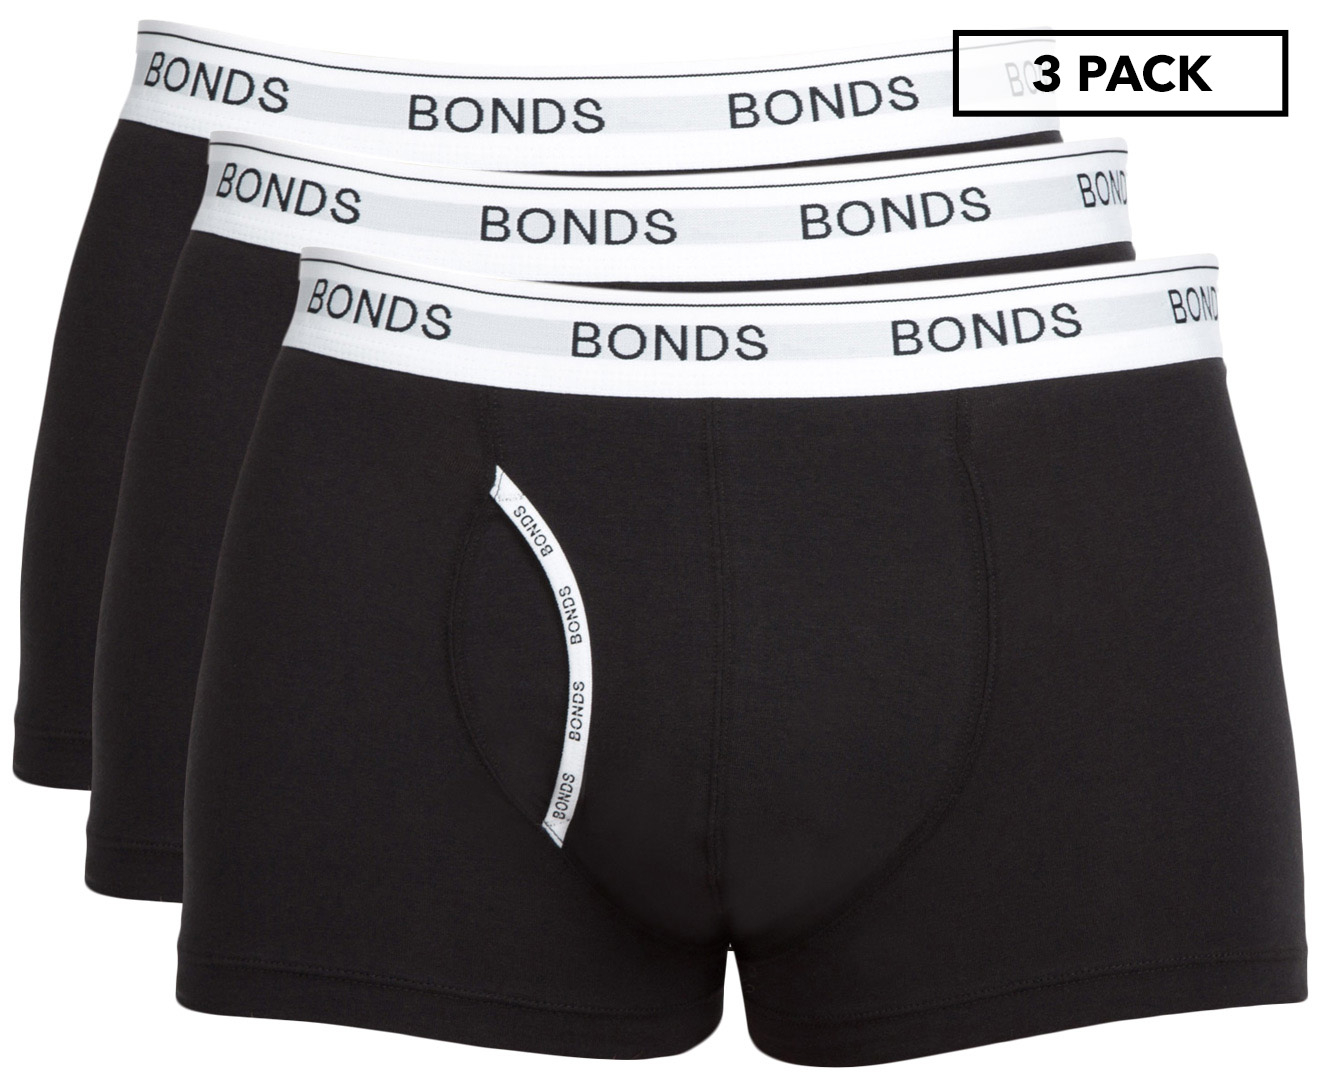 3 x Bonds Men's Core Fit Black Trunks Boxers Briefs Underwear - S M L XL XXL